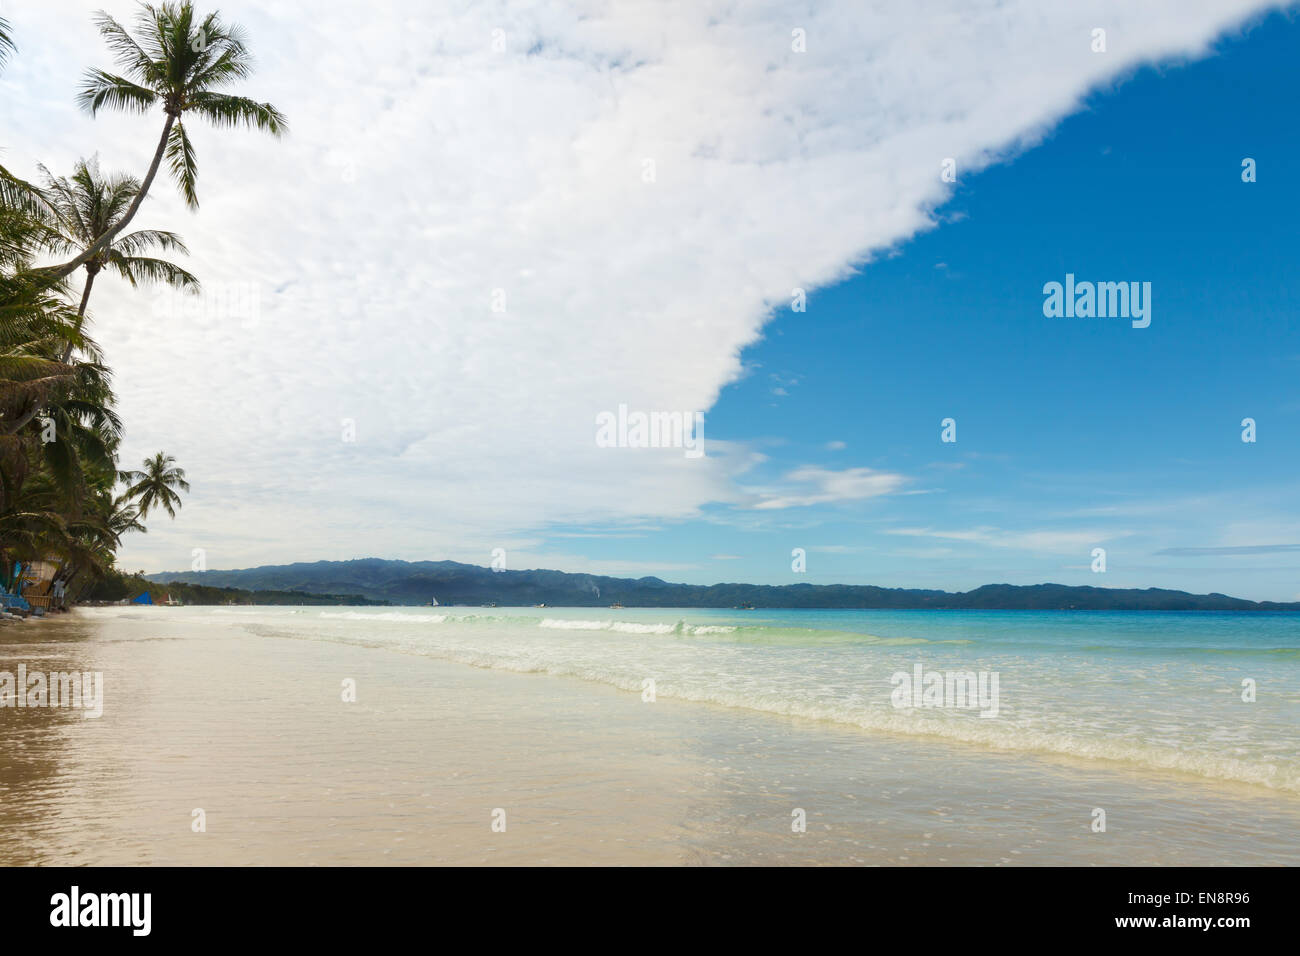 Palmen auf den gelben Sandstrand und tropischen Meer Philippinen Boracay island Stockfoto